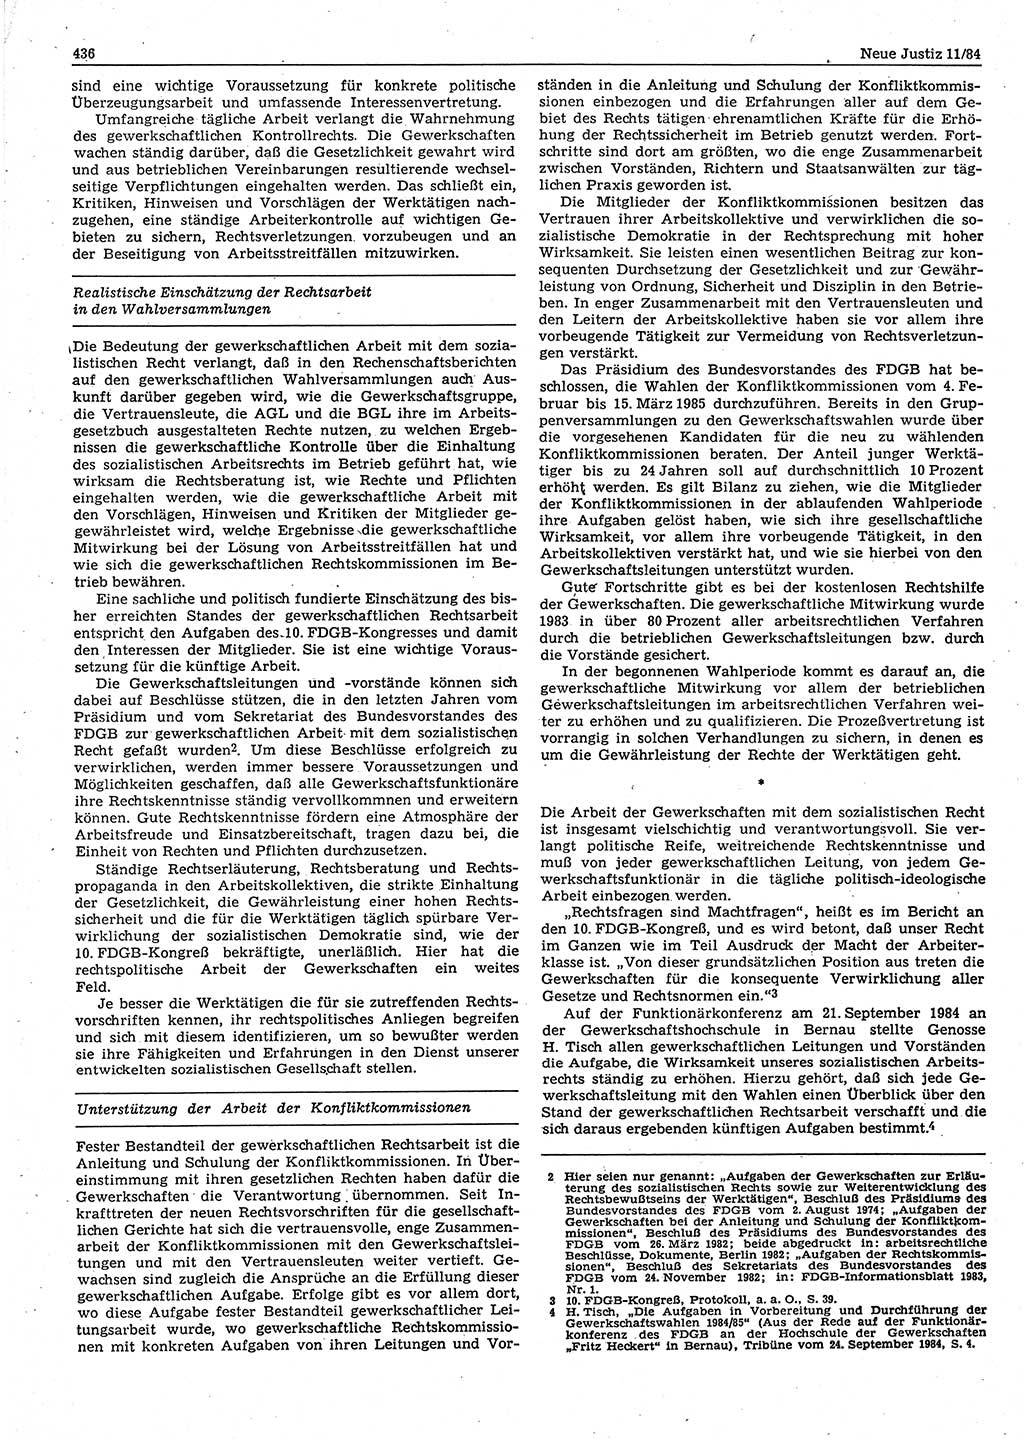 Neue Justiz (NJ), Zeitschrift für sozialistisches Recht und Gesetzlichkeit [Deutsche Demokratische Republik (DDR)], 38. Jahrgang 1984, Seite 436 (NJ DDR 1984, S. 436)